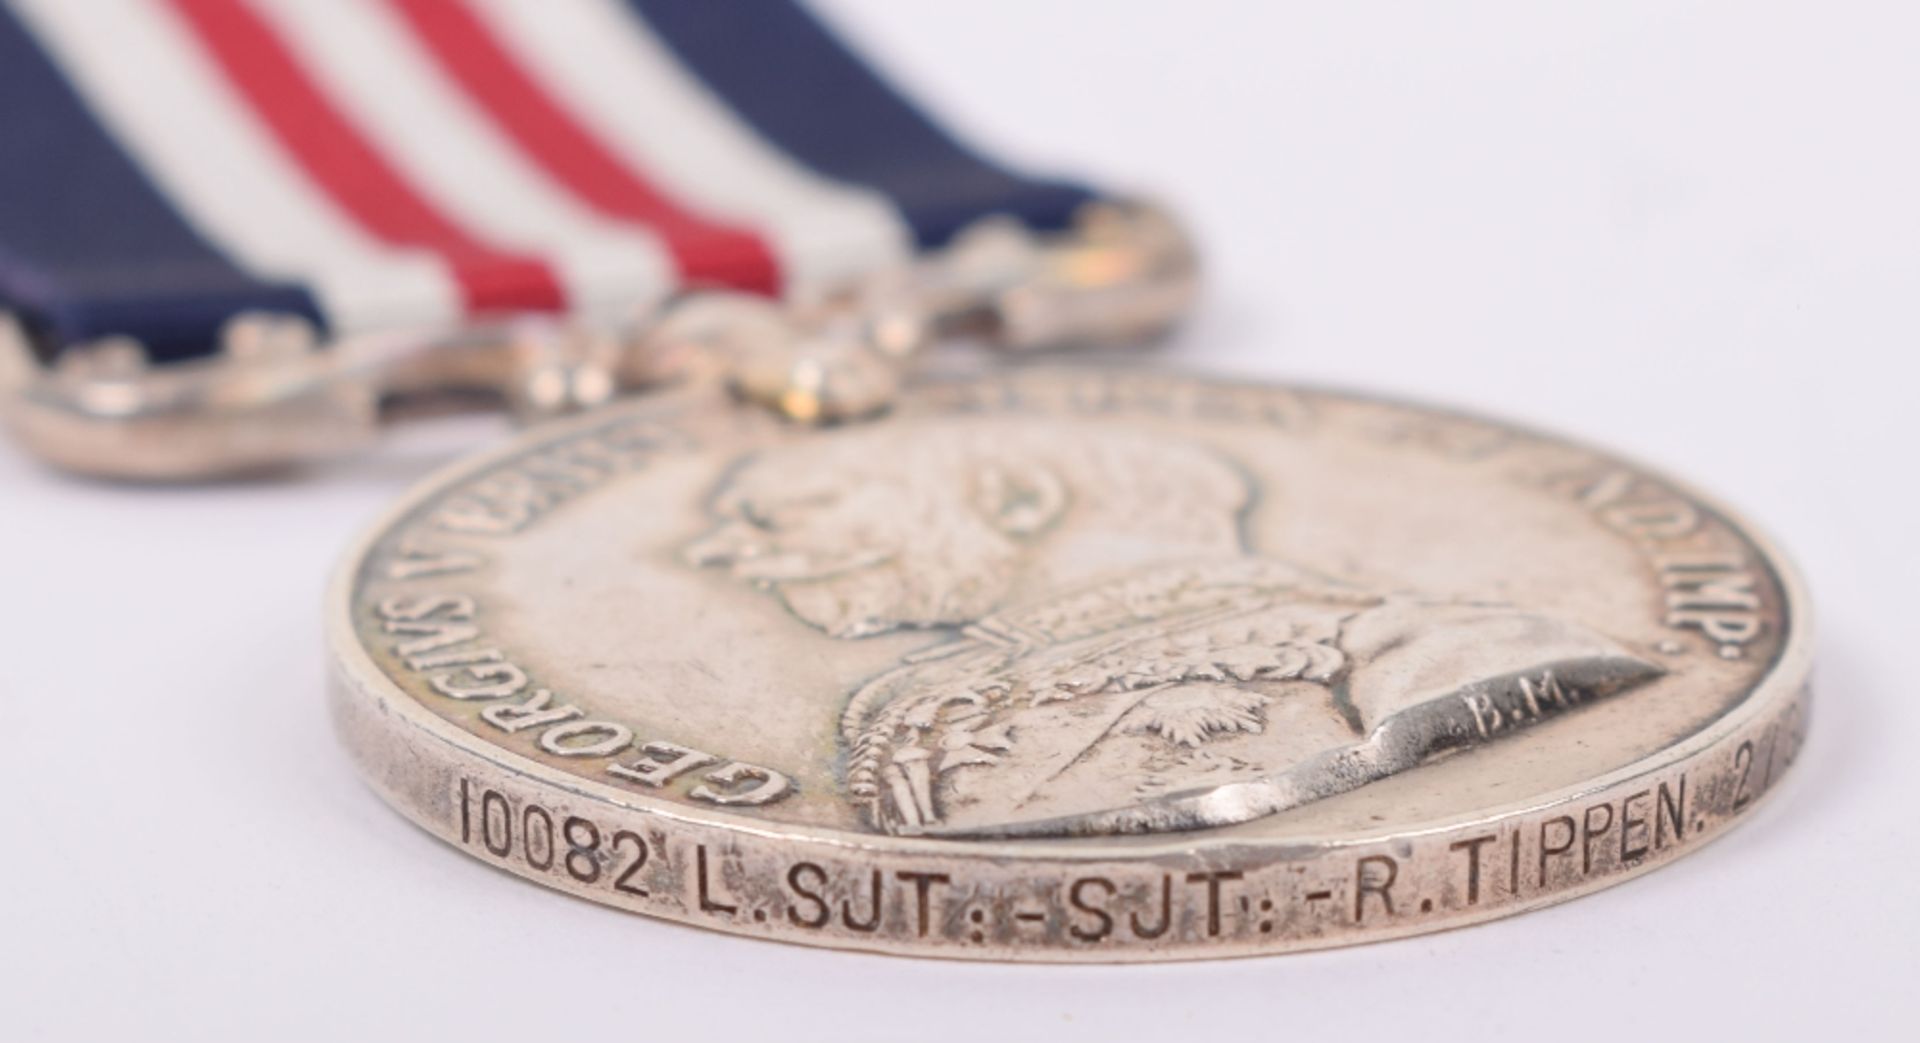 George V Military Medal (M.M) 2nd Battalion Gordon Highlanders – Awarded 2nd Award Bar - Image 3 of 6